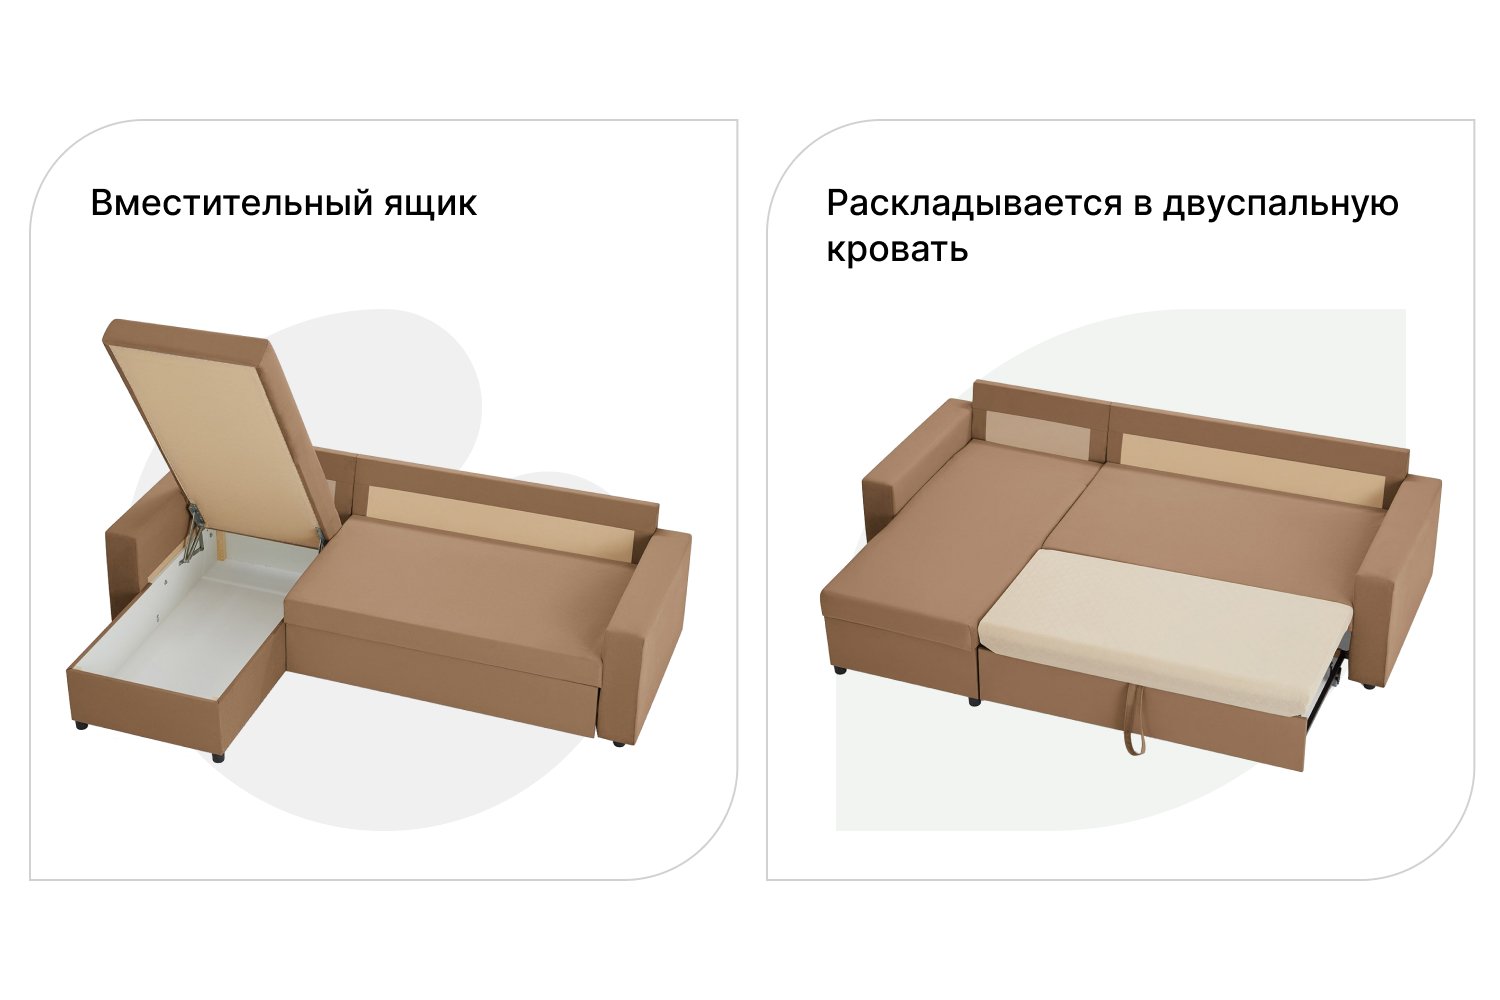 Инструкция по сборке углового дивана домино